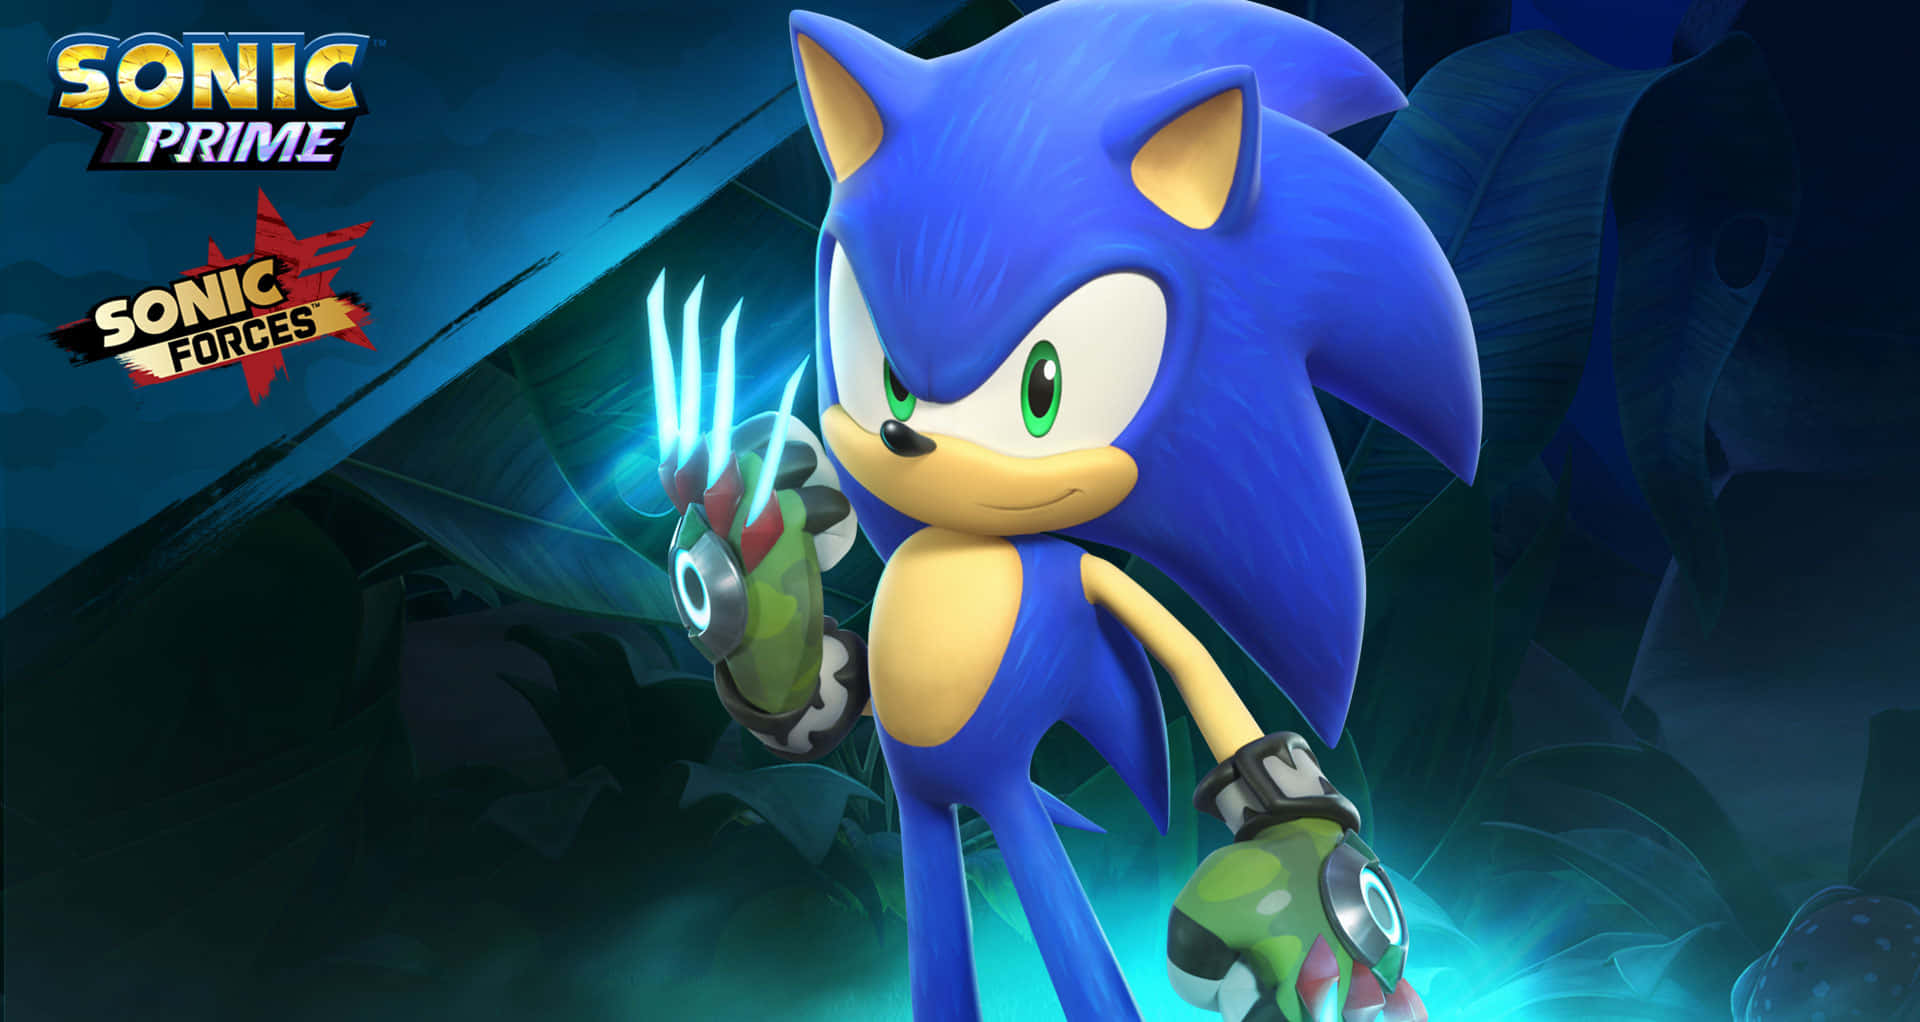 Sonicthe Hedgehog In Una Luce Blu.